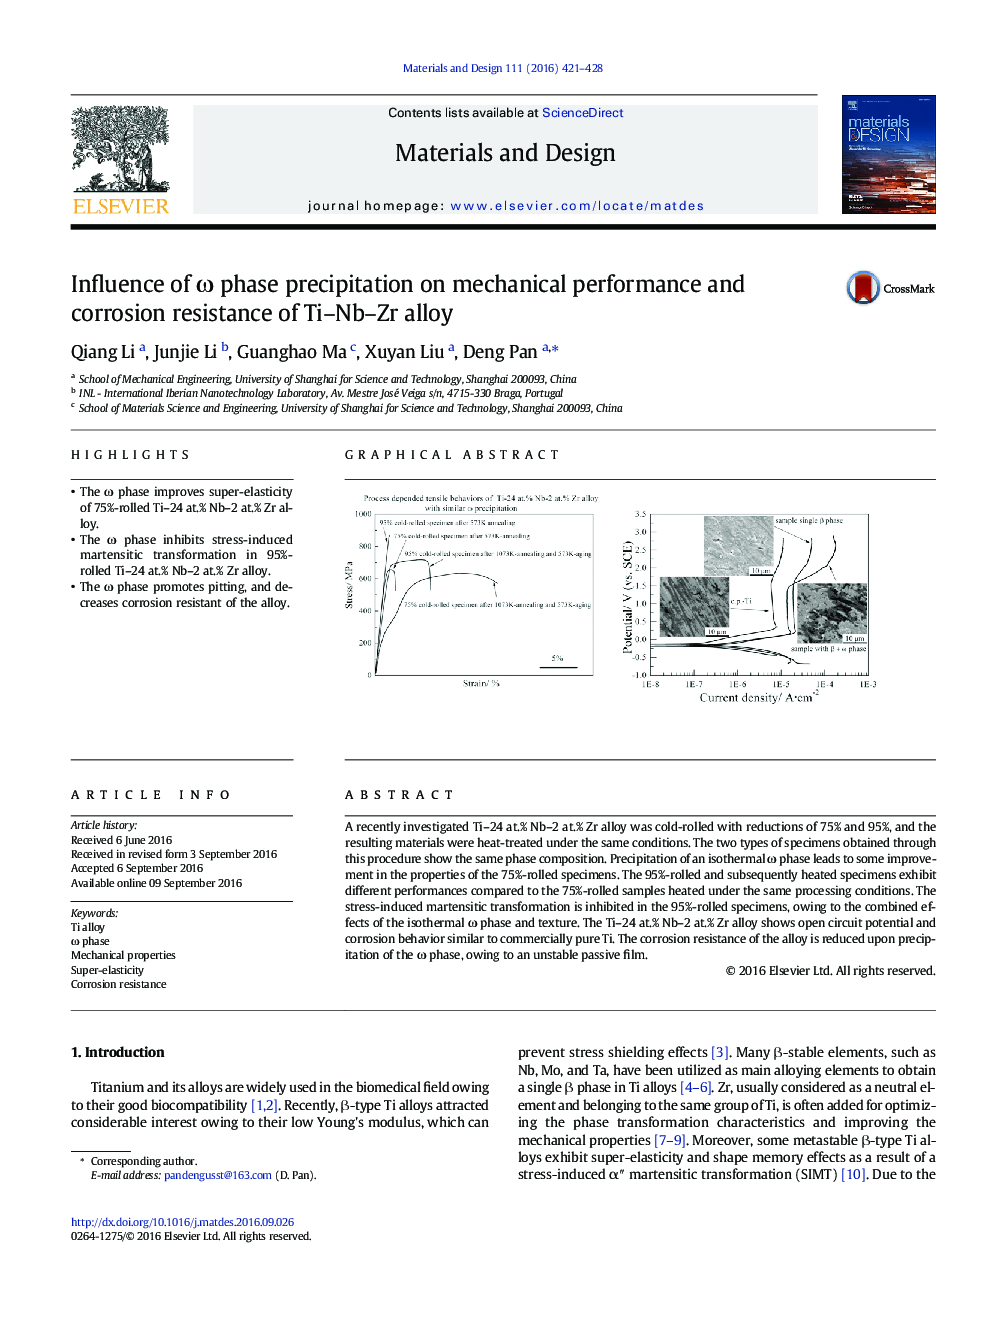 Influence of Ï phase precipitation on mechanical performance and corrosion resistance of Ti-Nb-Zr alloy